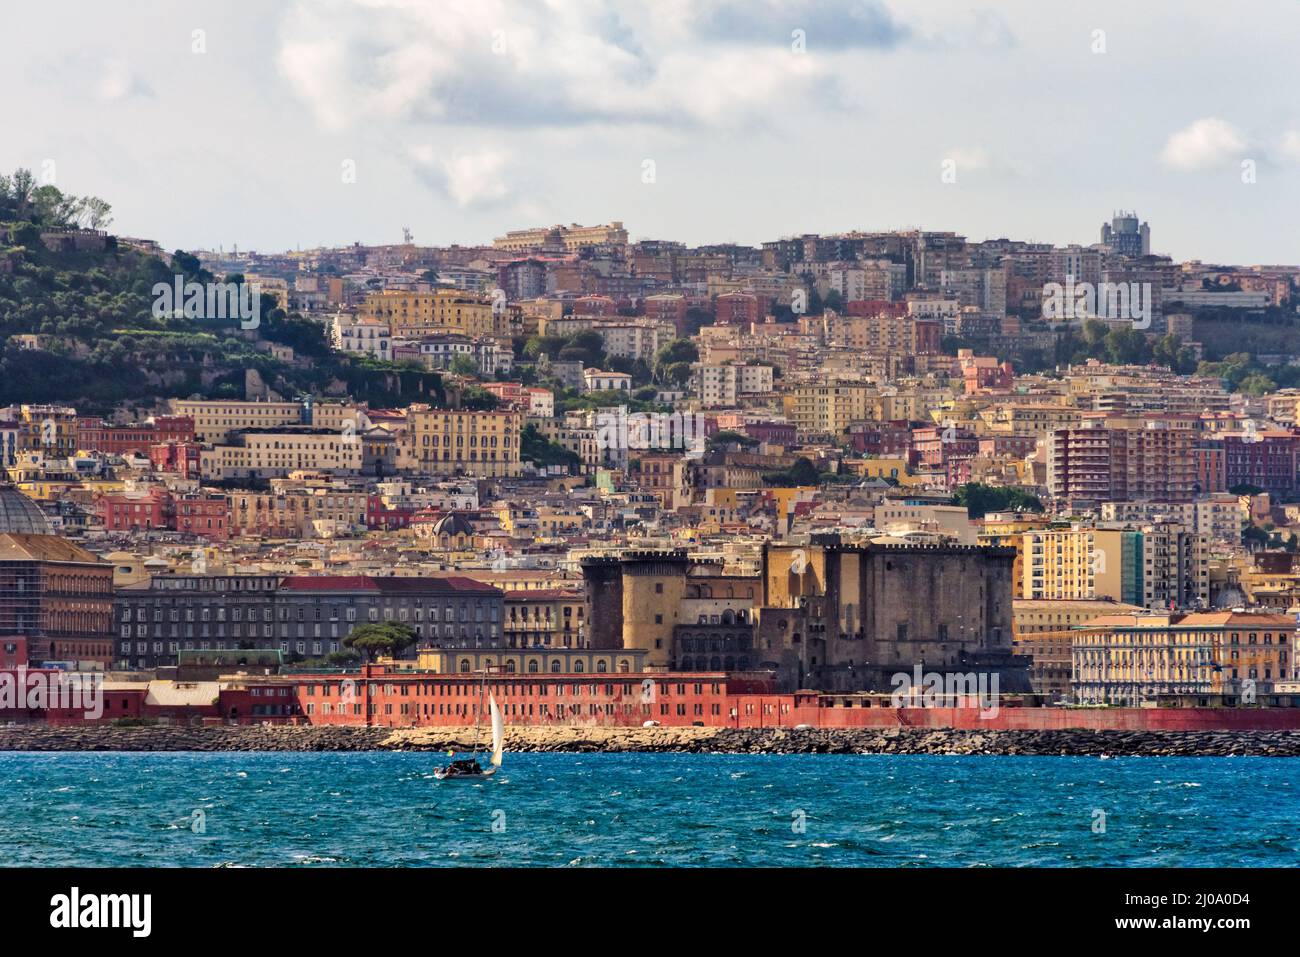 Buildings along the coast, Naples, Campania Region, Italy Stock Photo